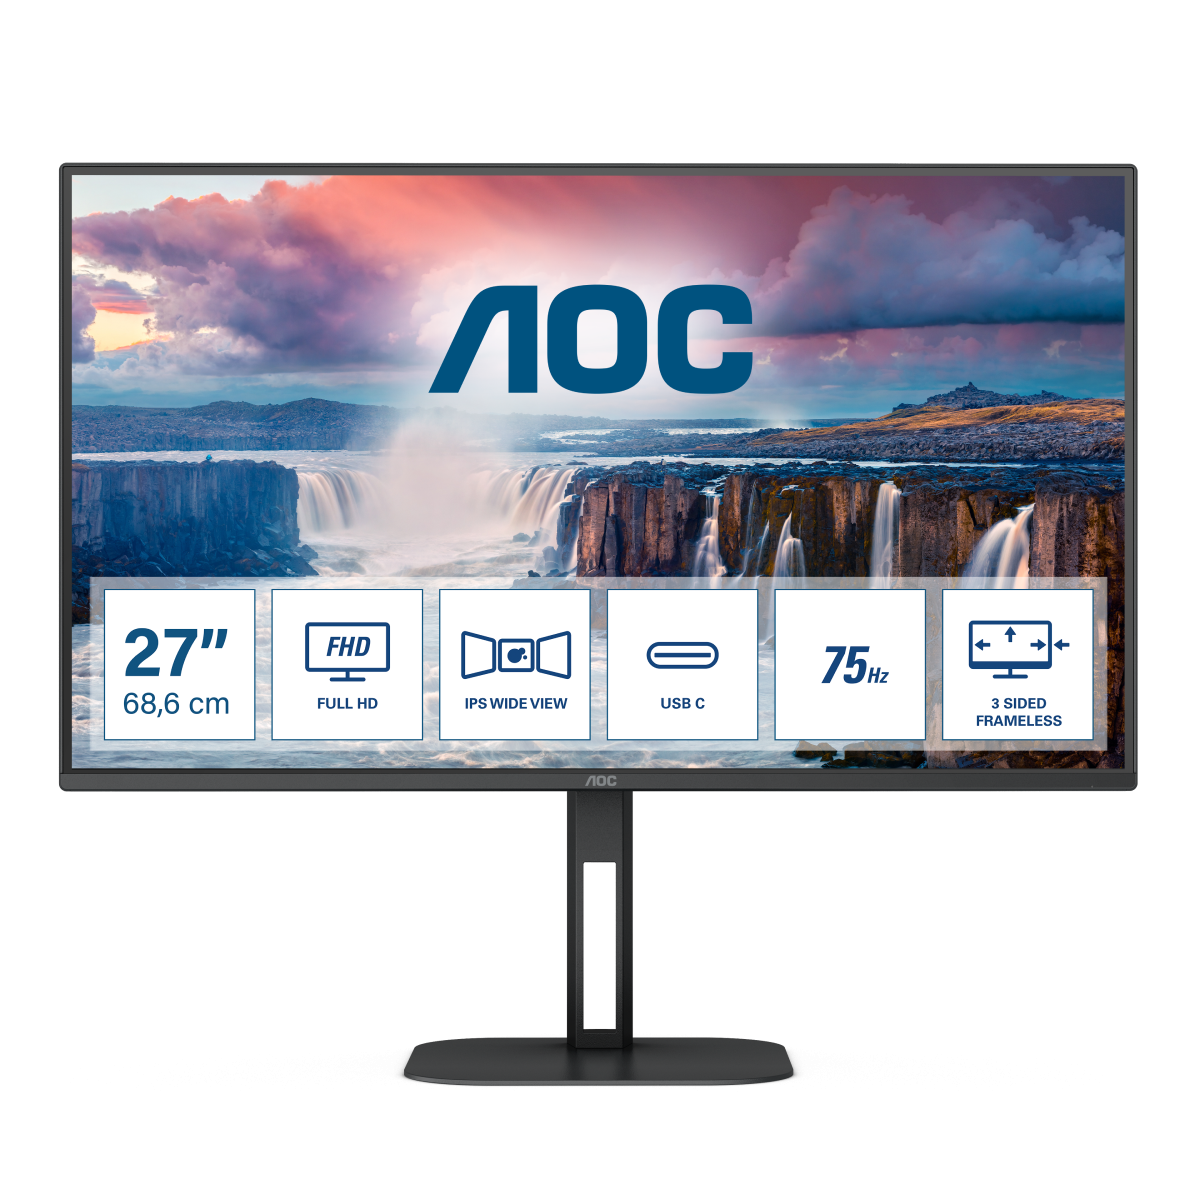 Монитор для дома и офиса AOC 27V5CE/BK в официальном интернет магазине AGONBYAOC.ru (AOC Россия)